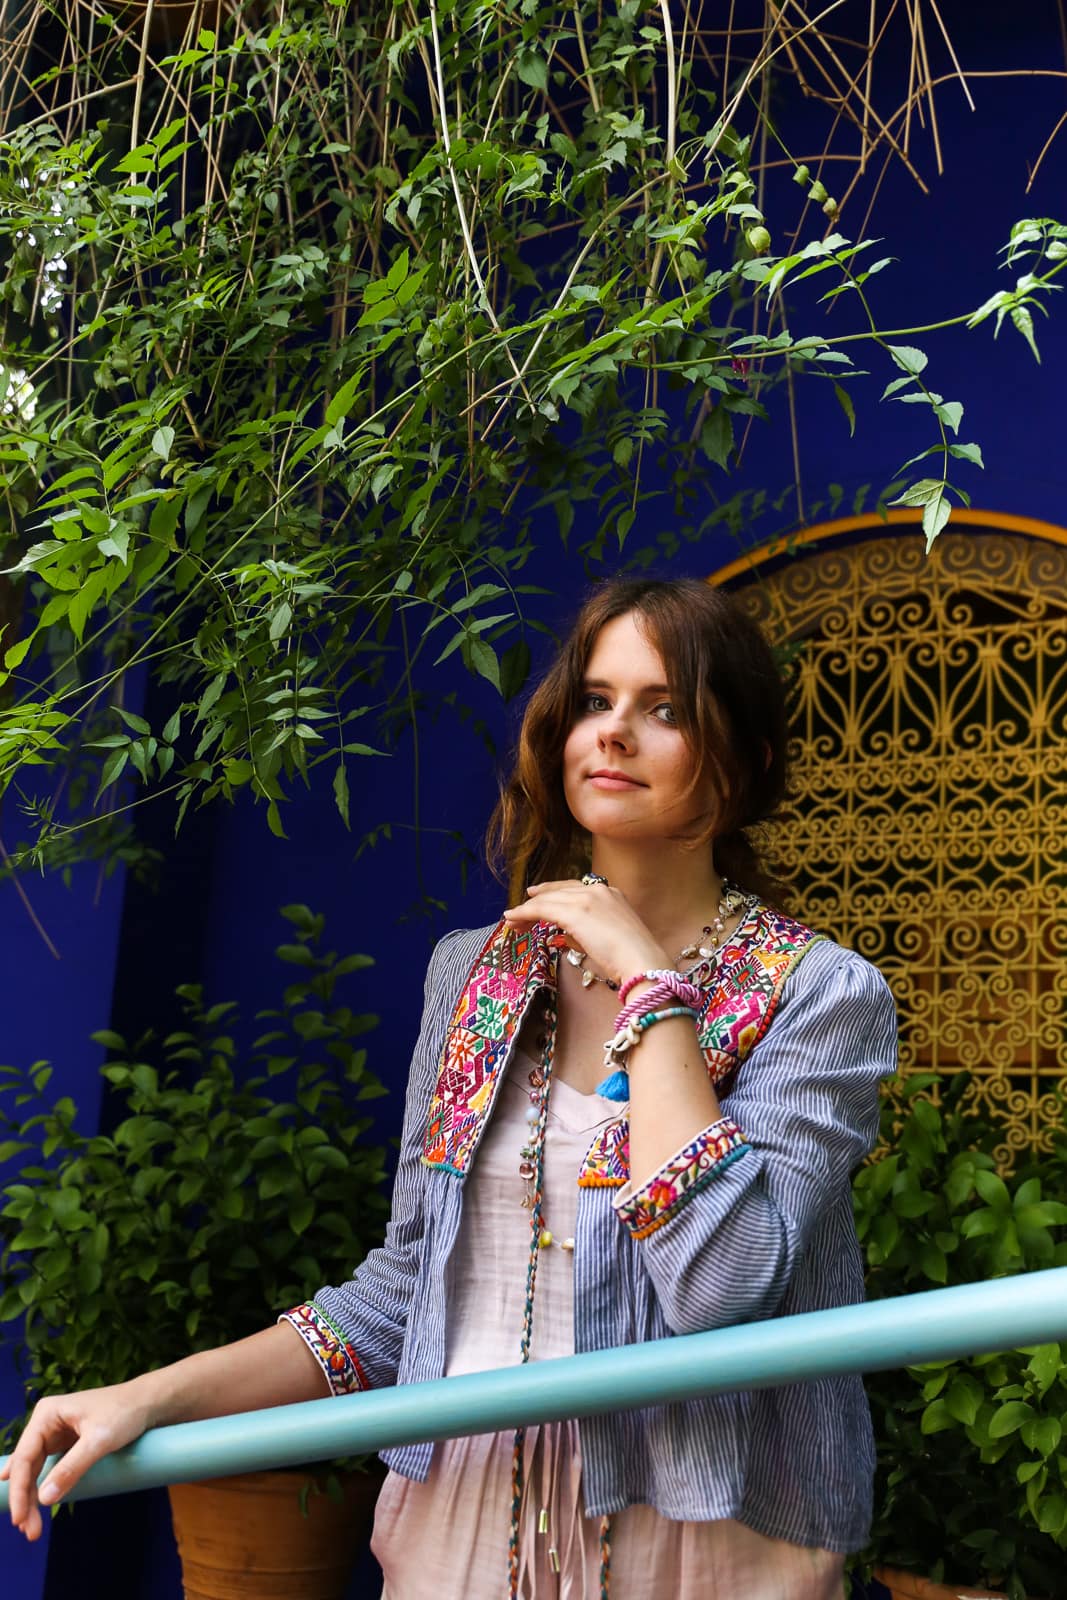 Traumhafte Orte in Marrakesch: Boho Outfit im berühmten Jardin Majorelle